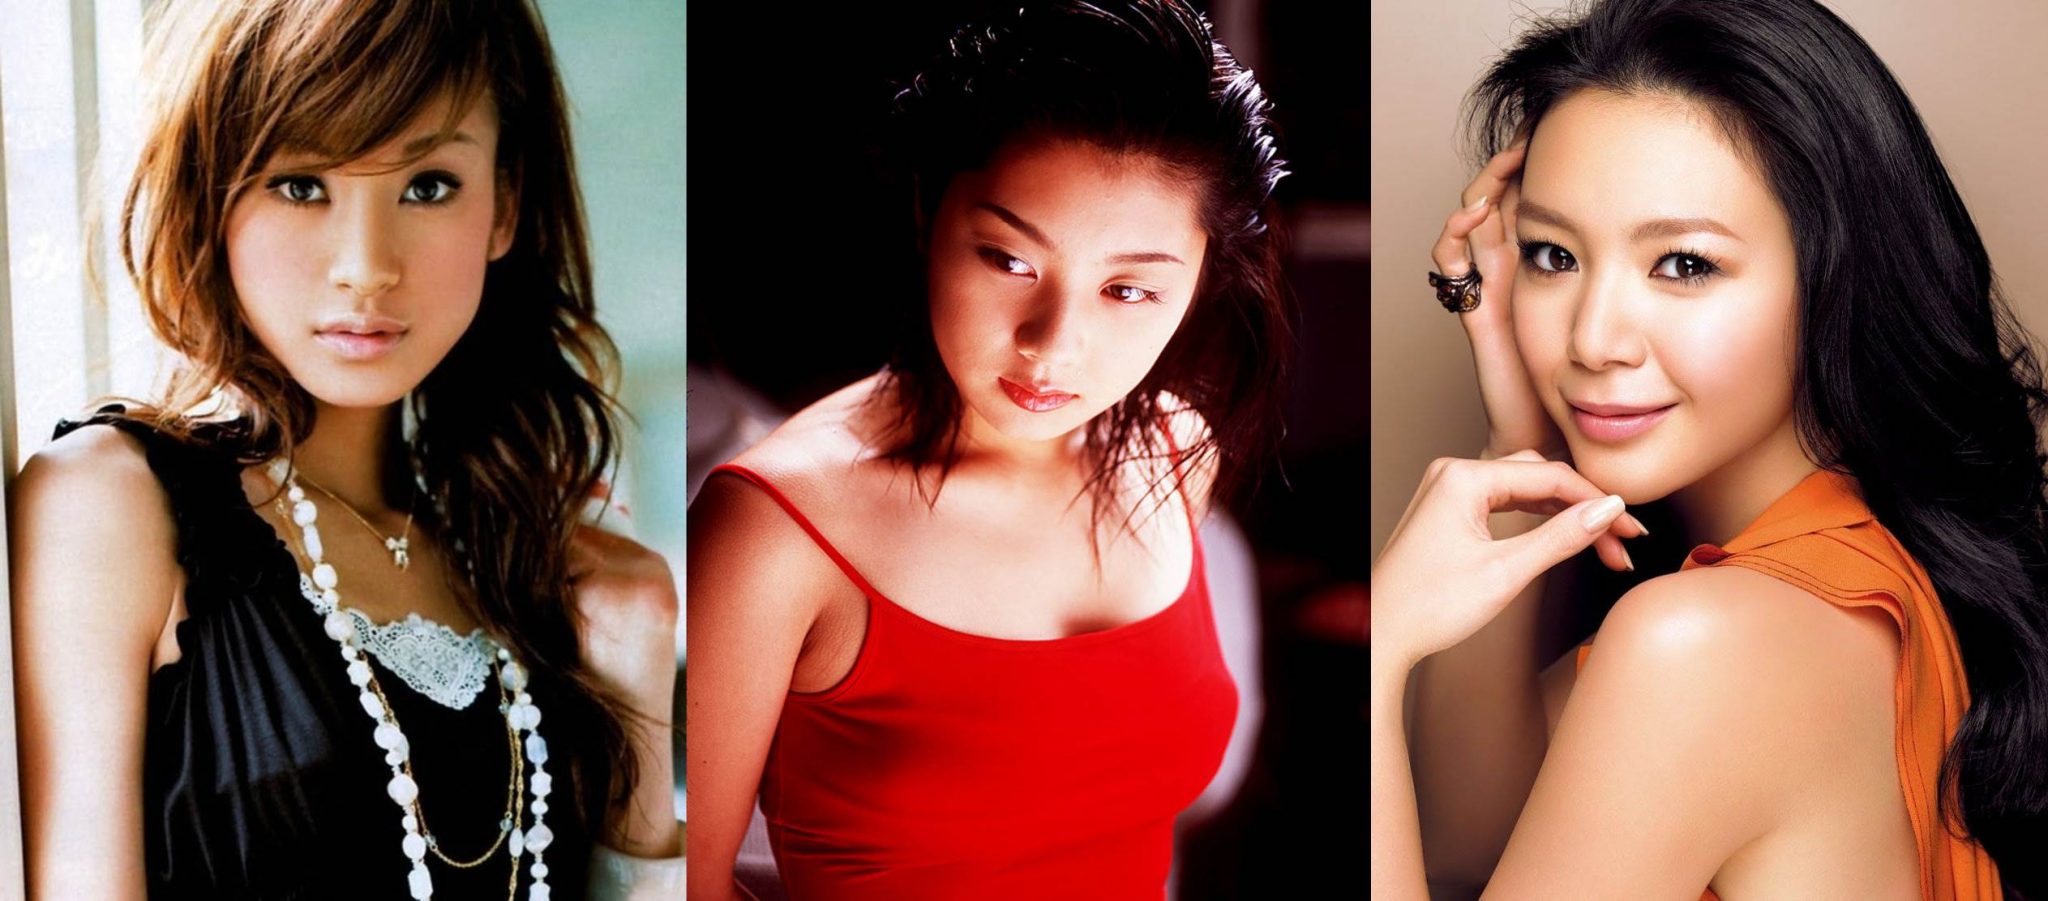 Самые красивые японские девушки-модели (22 фото). Девушки японии